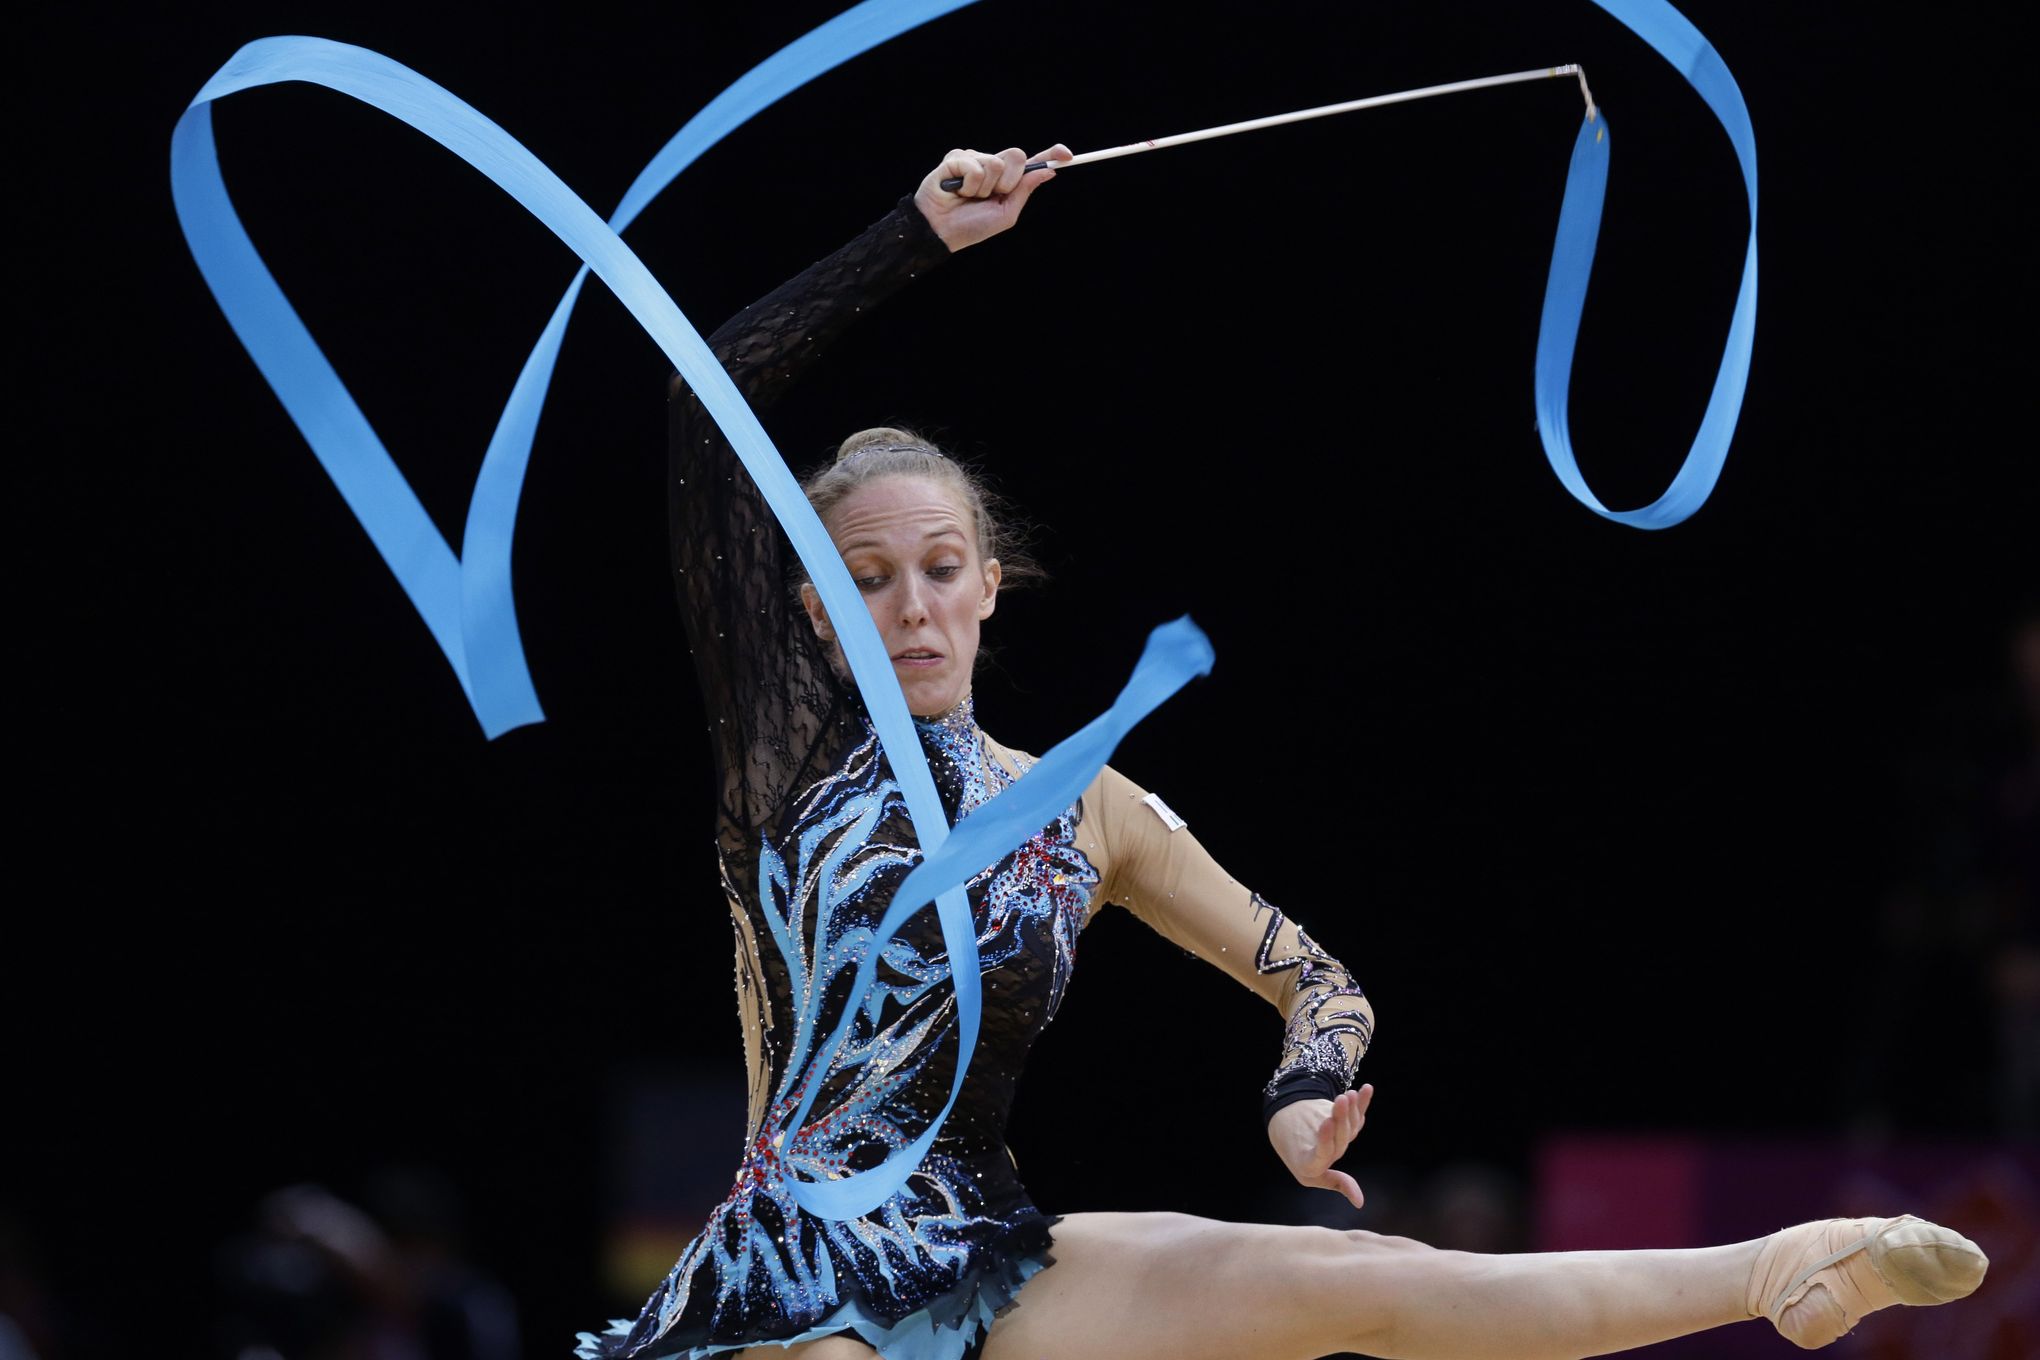 Fashion fans will dig the Olympics rhythmic gymnastics 